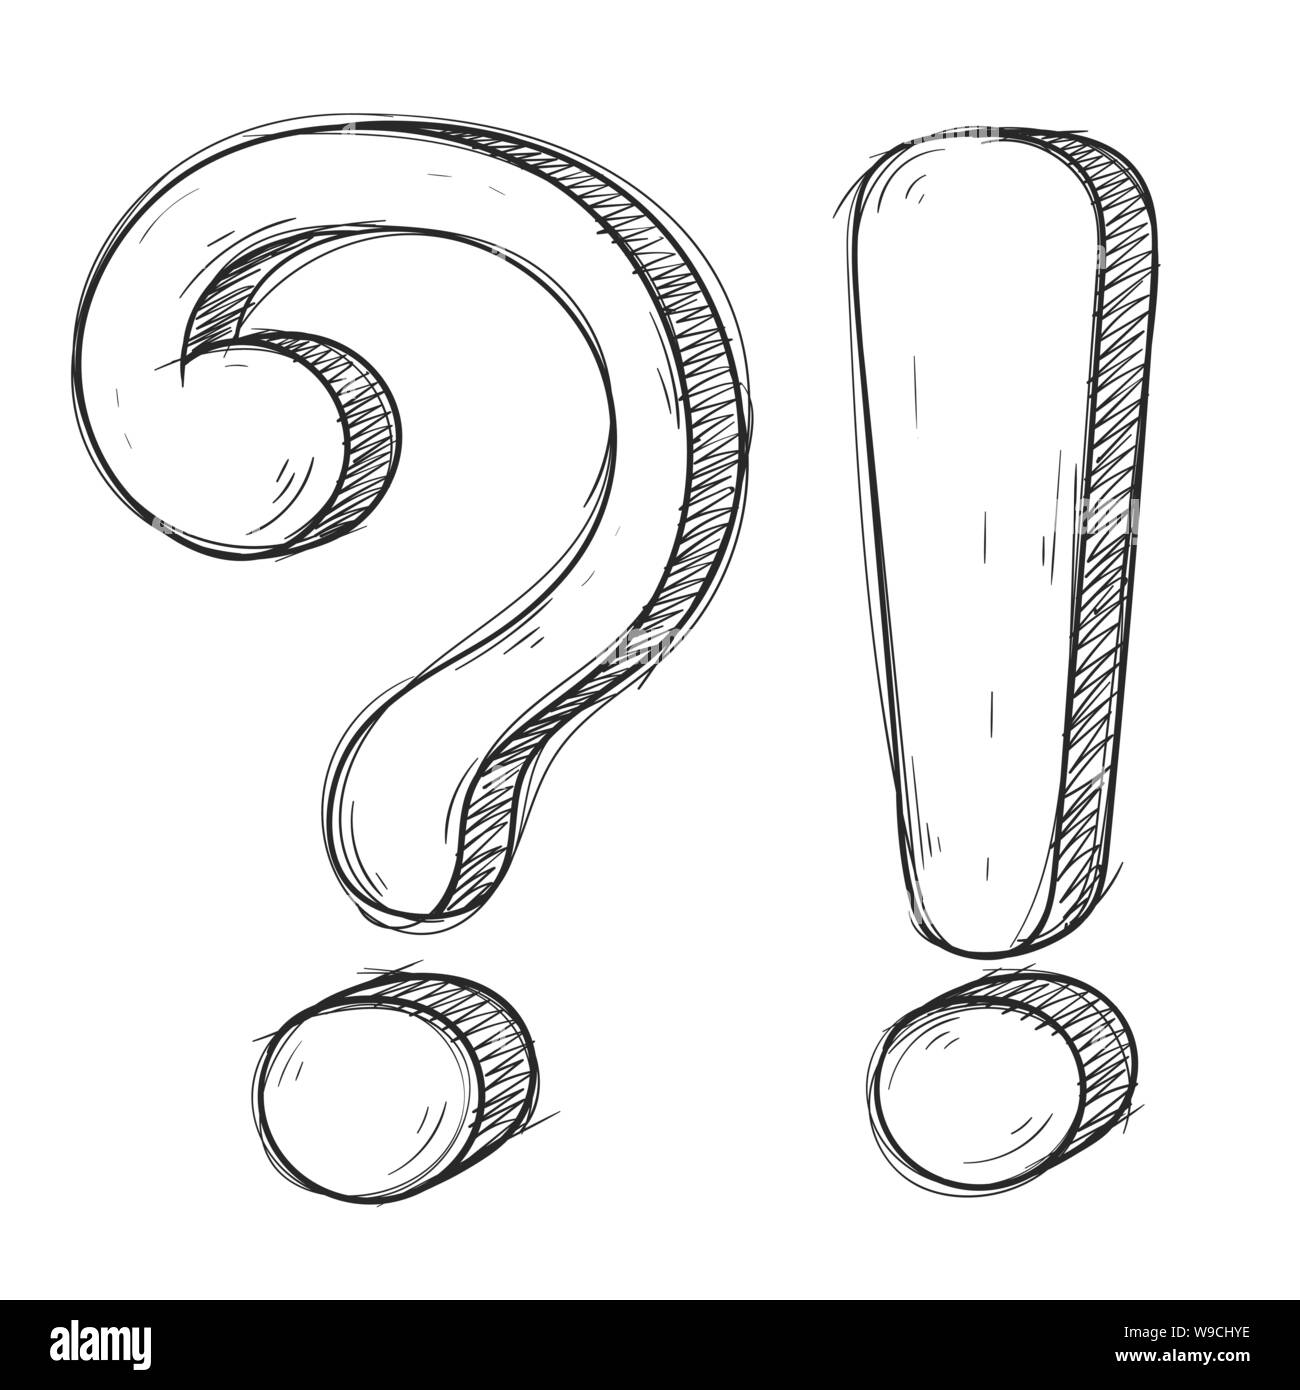 Frage und Exlamation markiert. Hand gezeichnet doodle Stil Stock Vektor